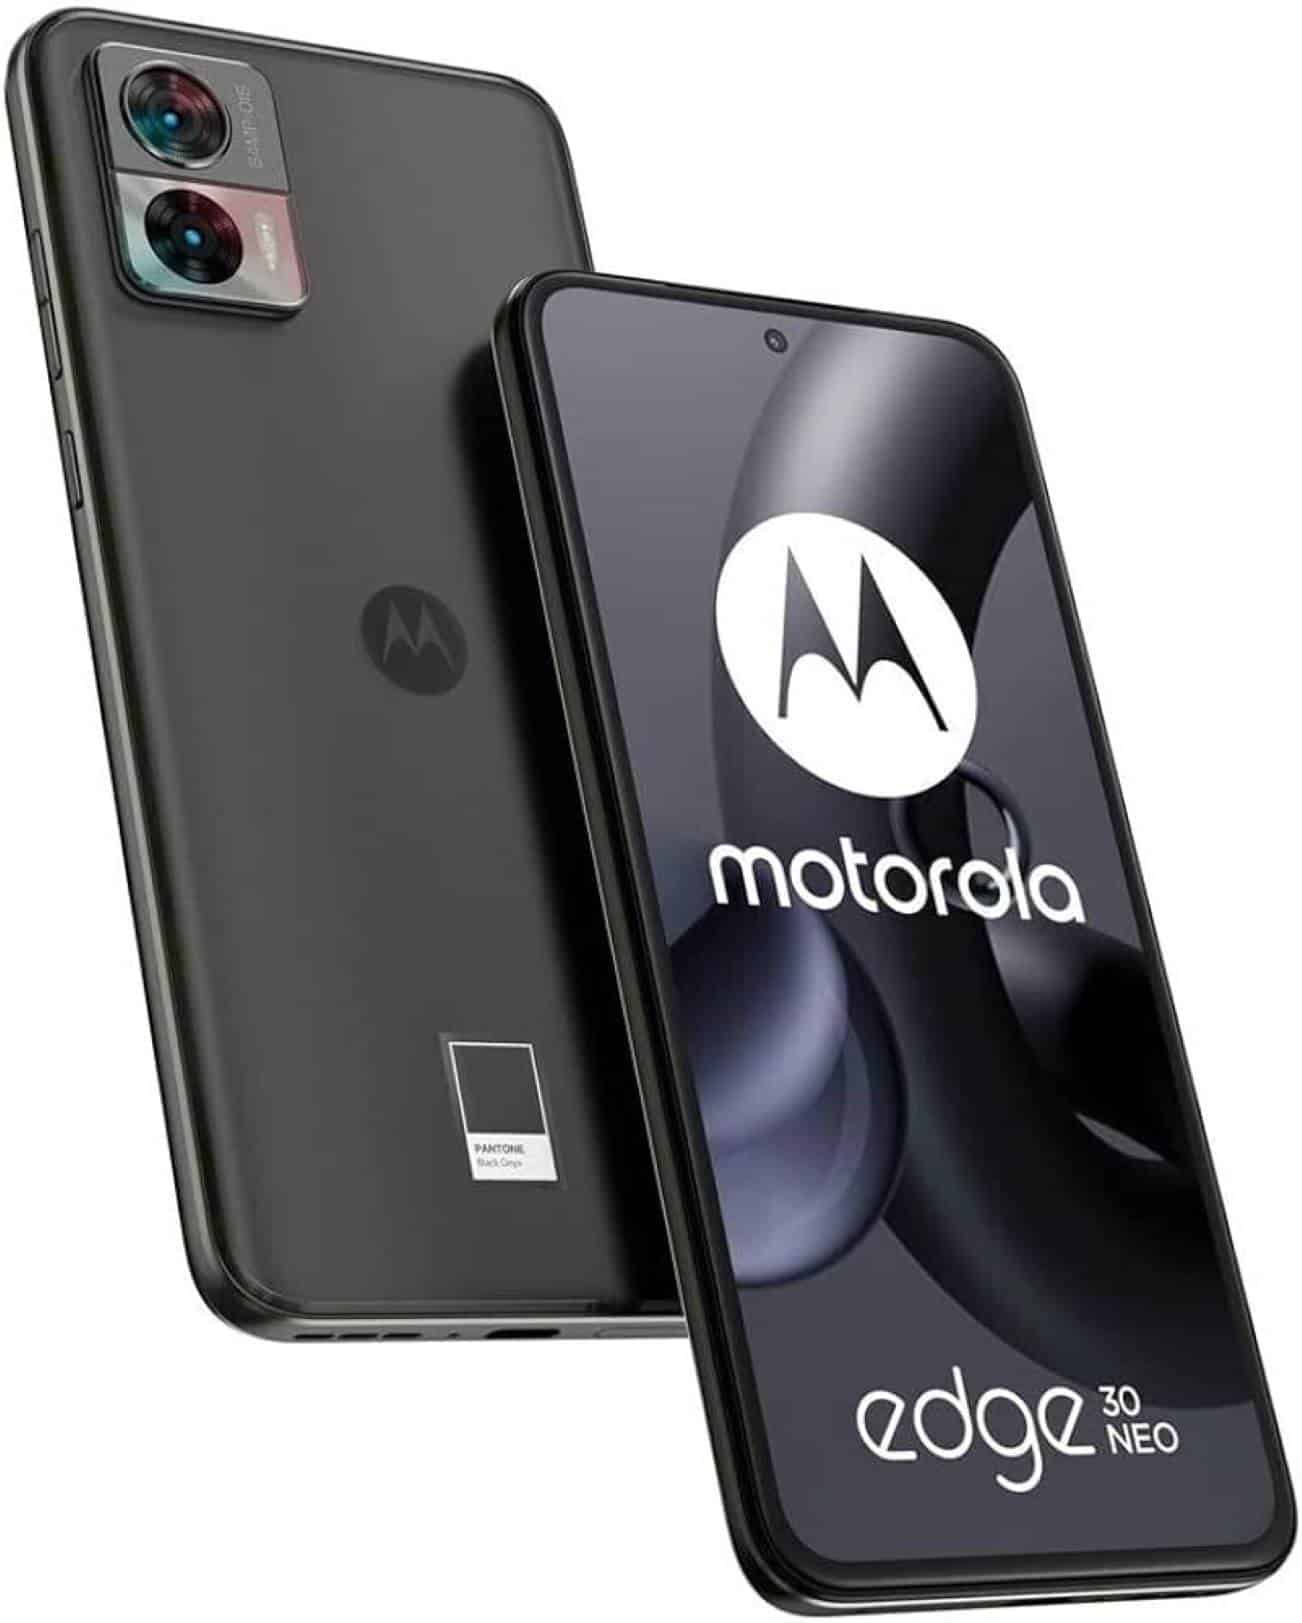 Características del smartphone Motorola Edge 30 Neo